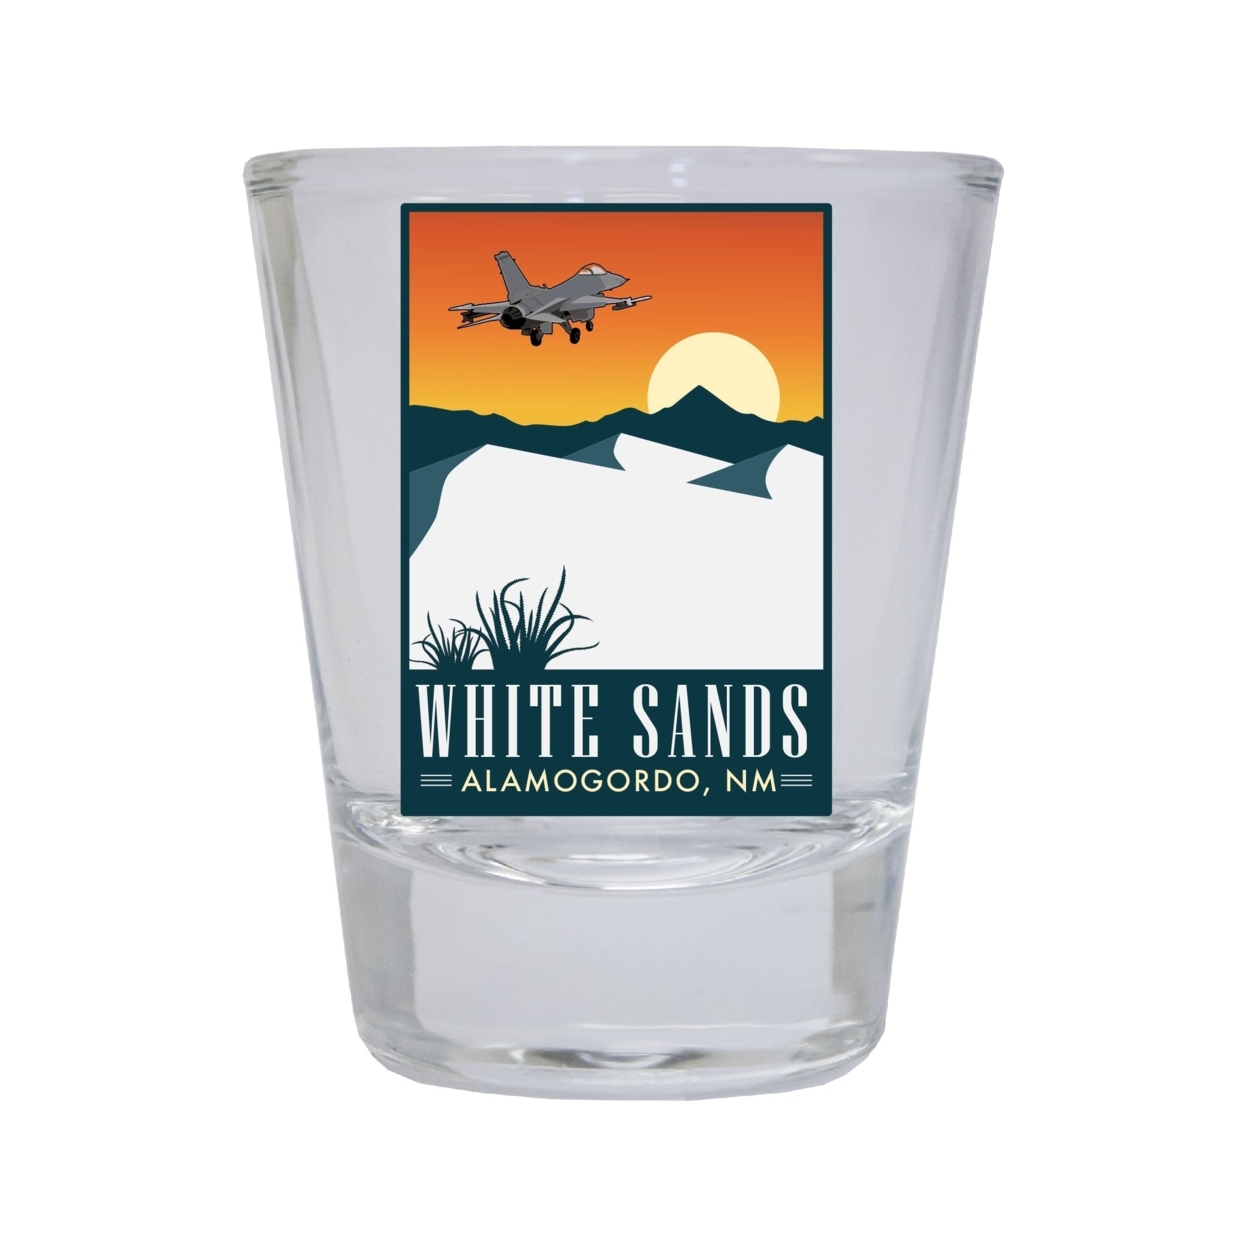 White Sands Alamogordo New Mexico Souvenir Round Shot Glass Choice Of Design - Design 1